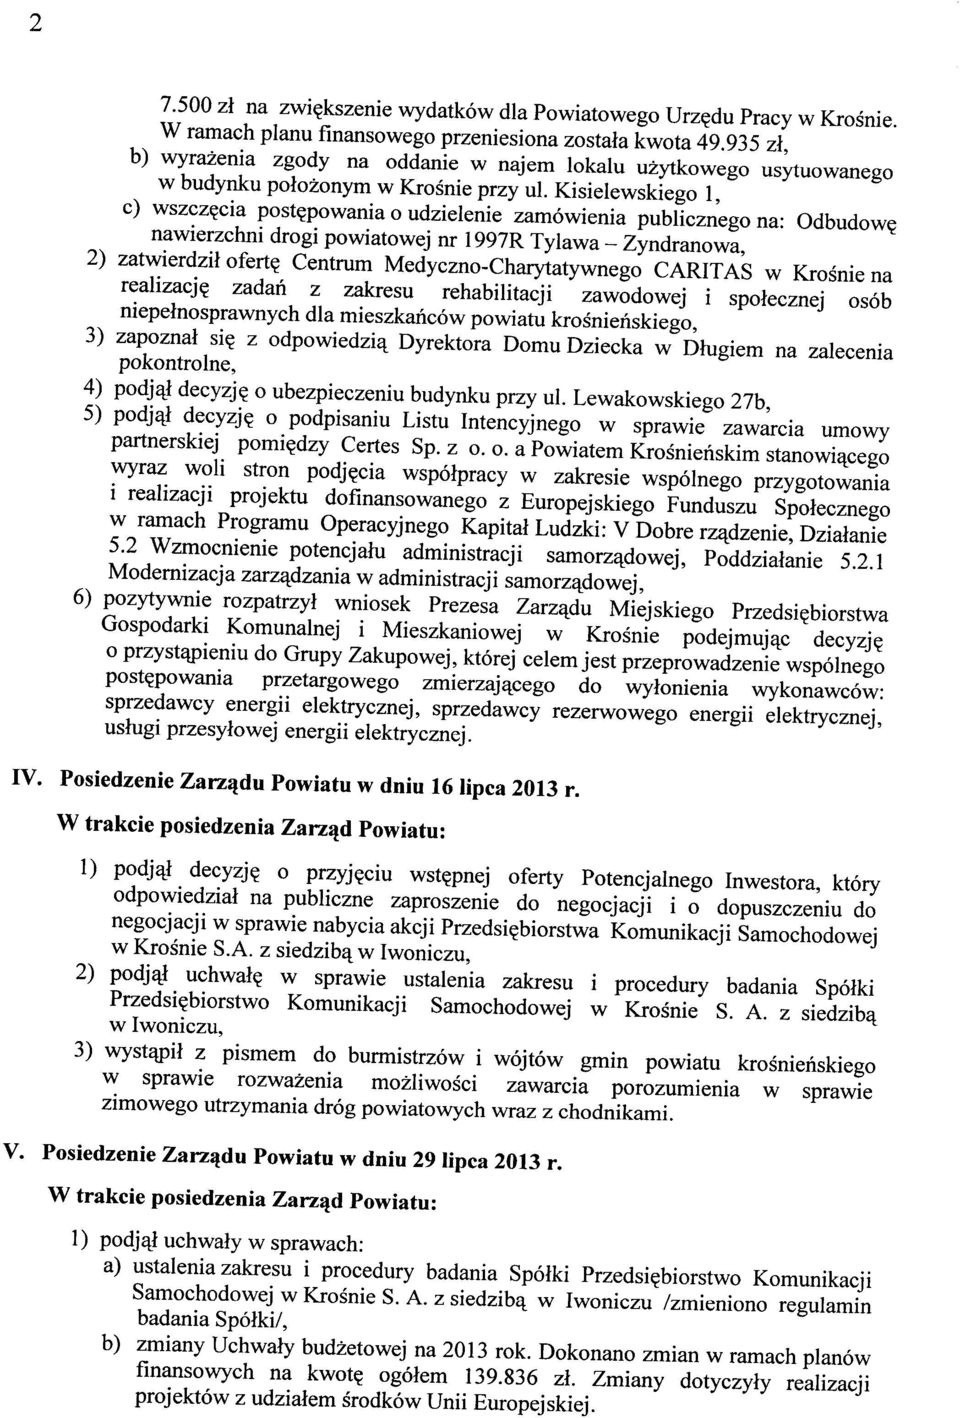 Kisielewskiego 1, c) wszczęcia postępowania o udzielenie zamówienia publicznego na: Odbudowę nawierzchni drogi powiatowej nr 1997R Tylawa - Zyndranowa, 2) zatwierdził ofertę Centrum